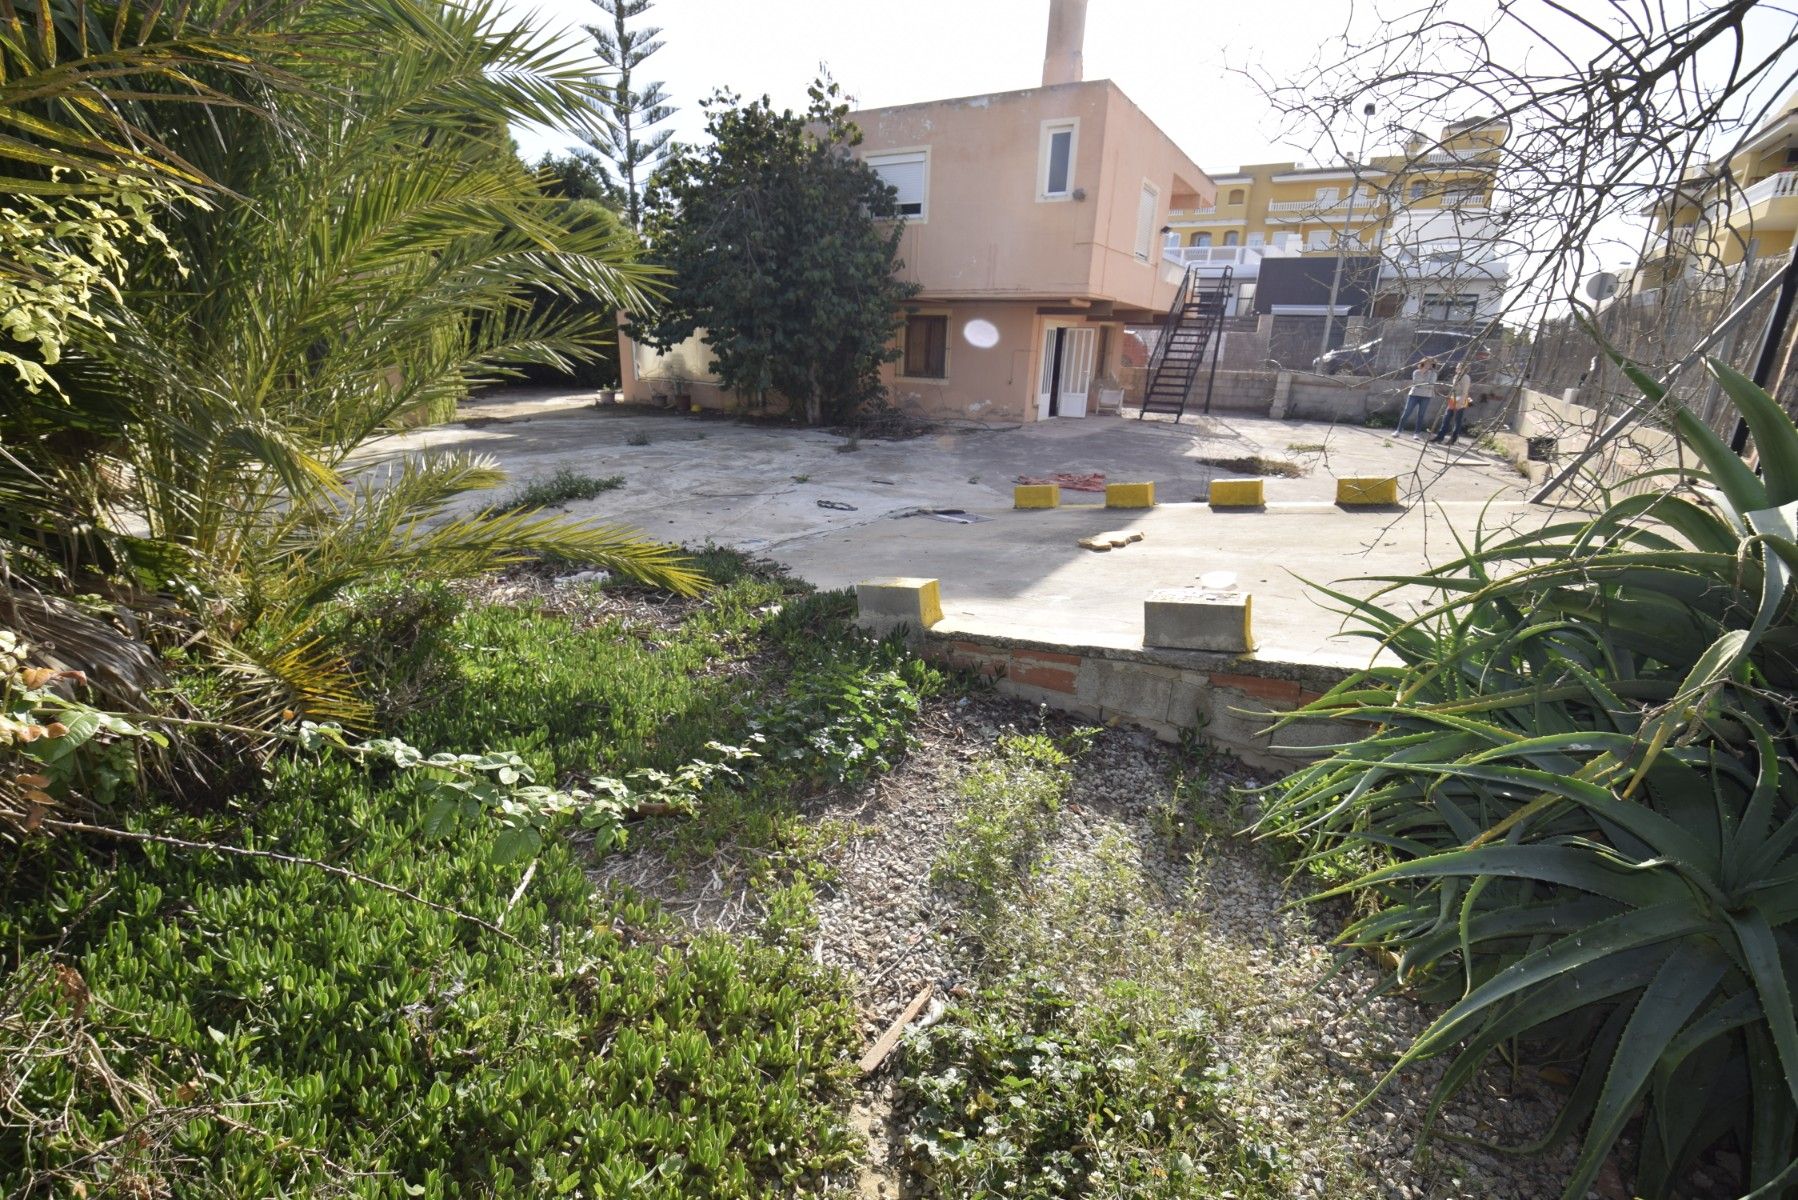 Solar urbano  Formentera del segura, alicante. Se vende parcela de 1100 metros cuadrados. 
situada en una zona